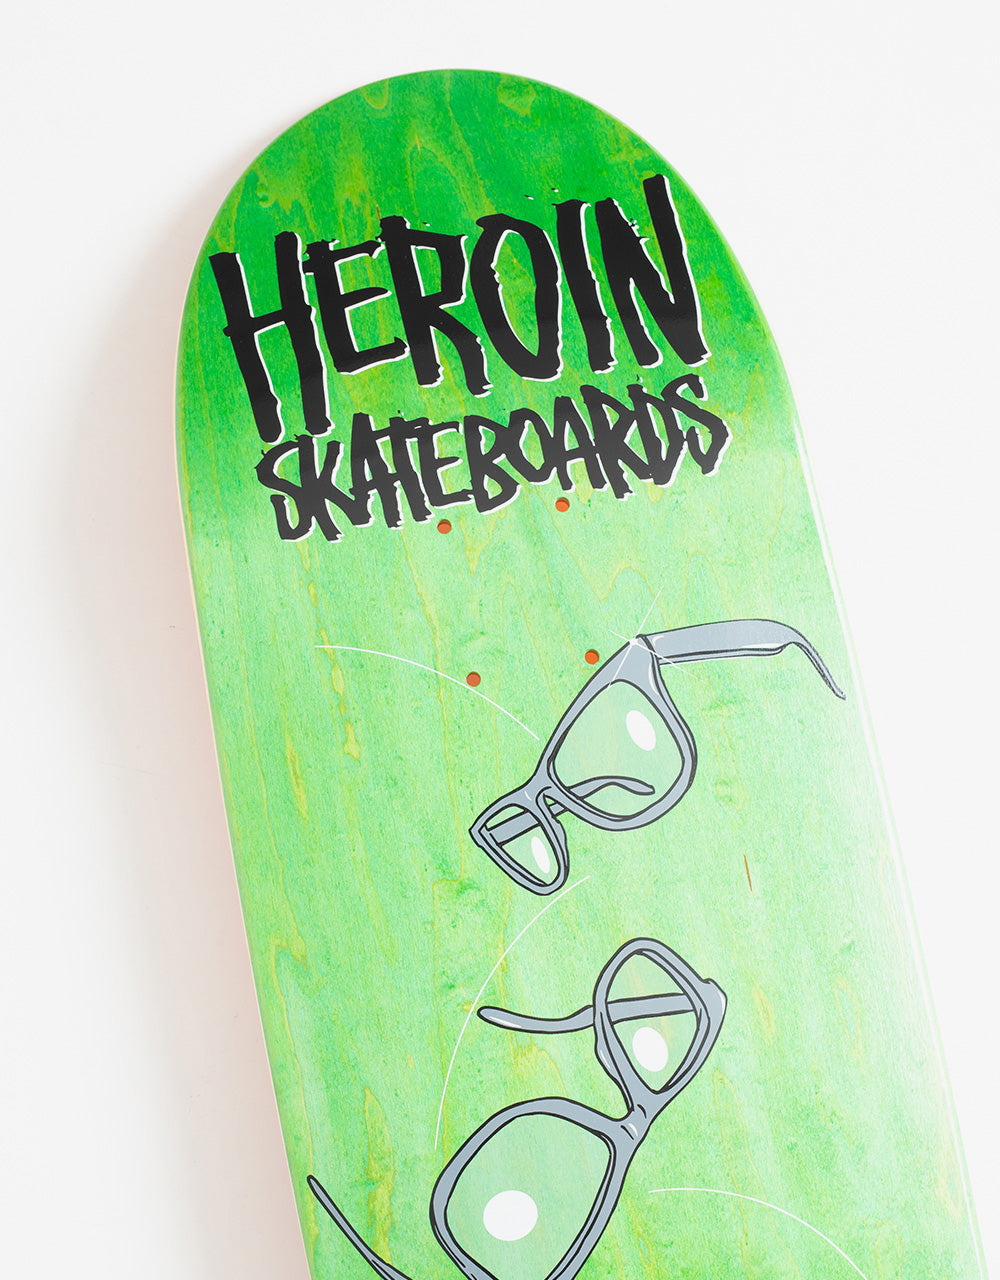 Heroin Zane Glasses Skateboard Deck - 9"